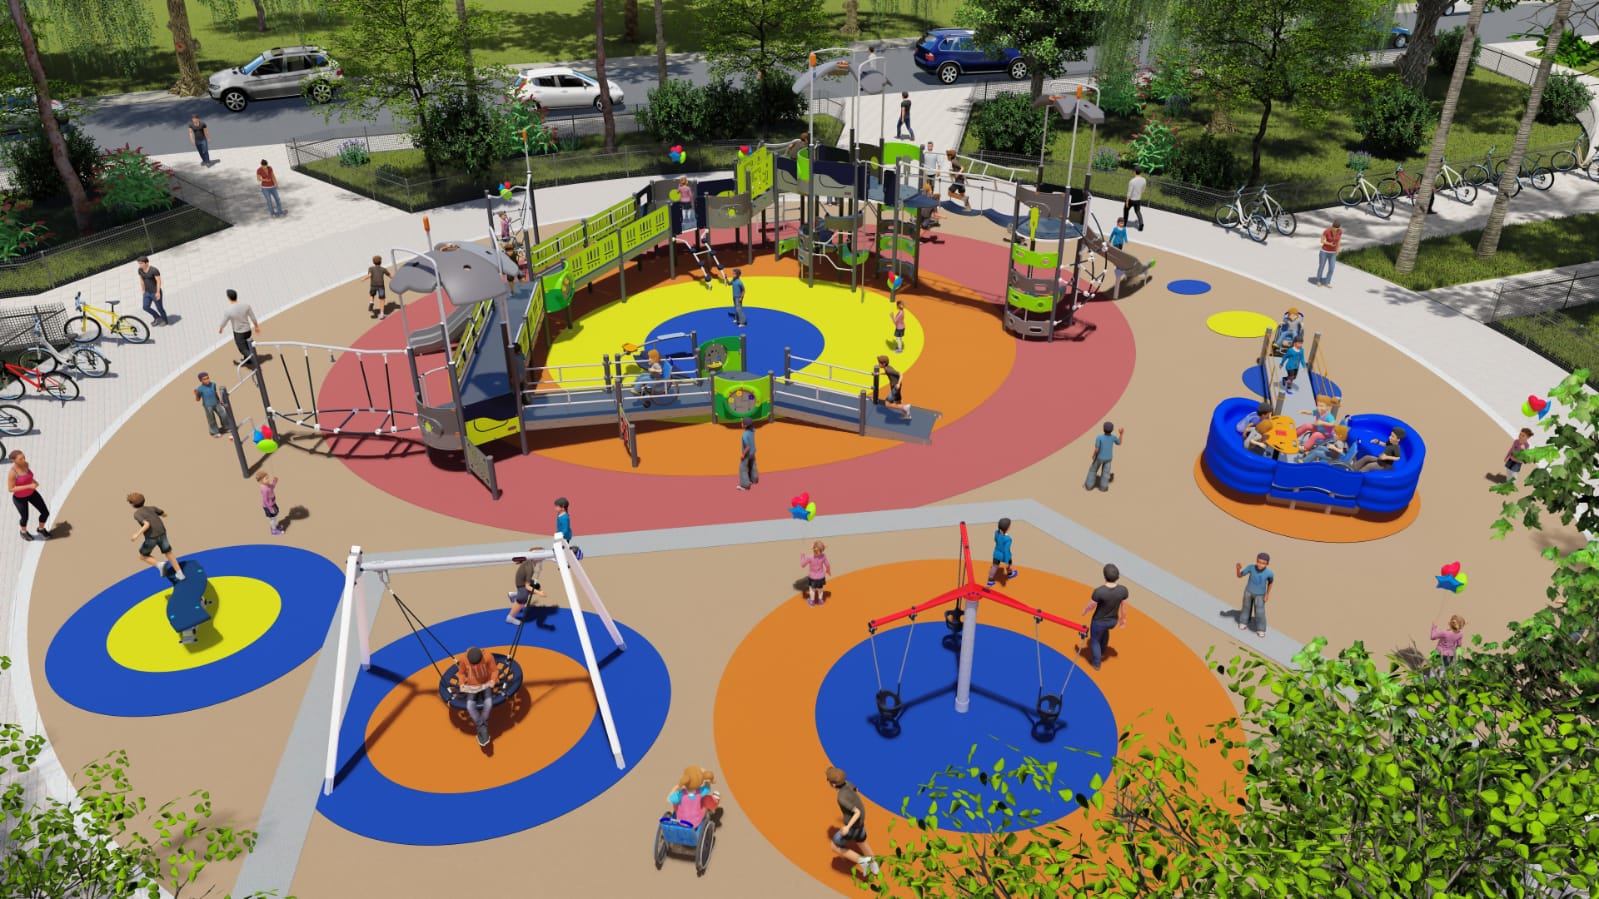 מתי בכל גן משחקים בעיר? פארק השעשועים החדש בירושלים שיונגש לילדים עם מוגבלויות